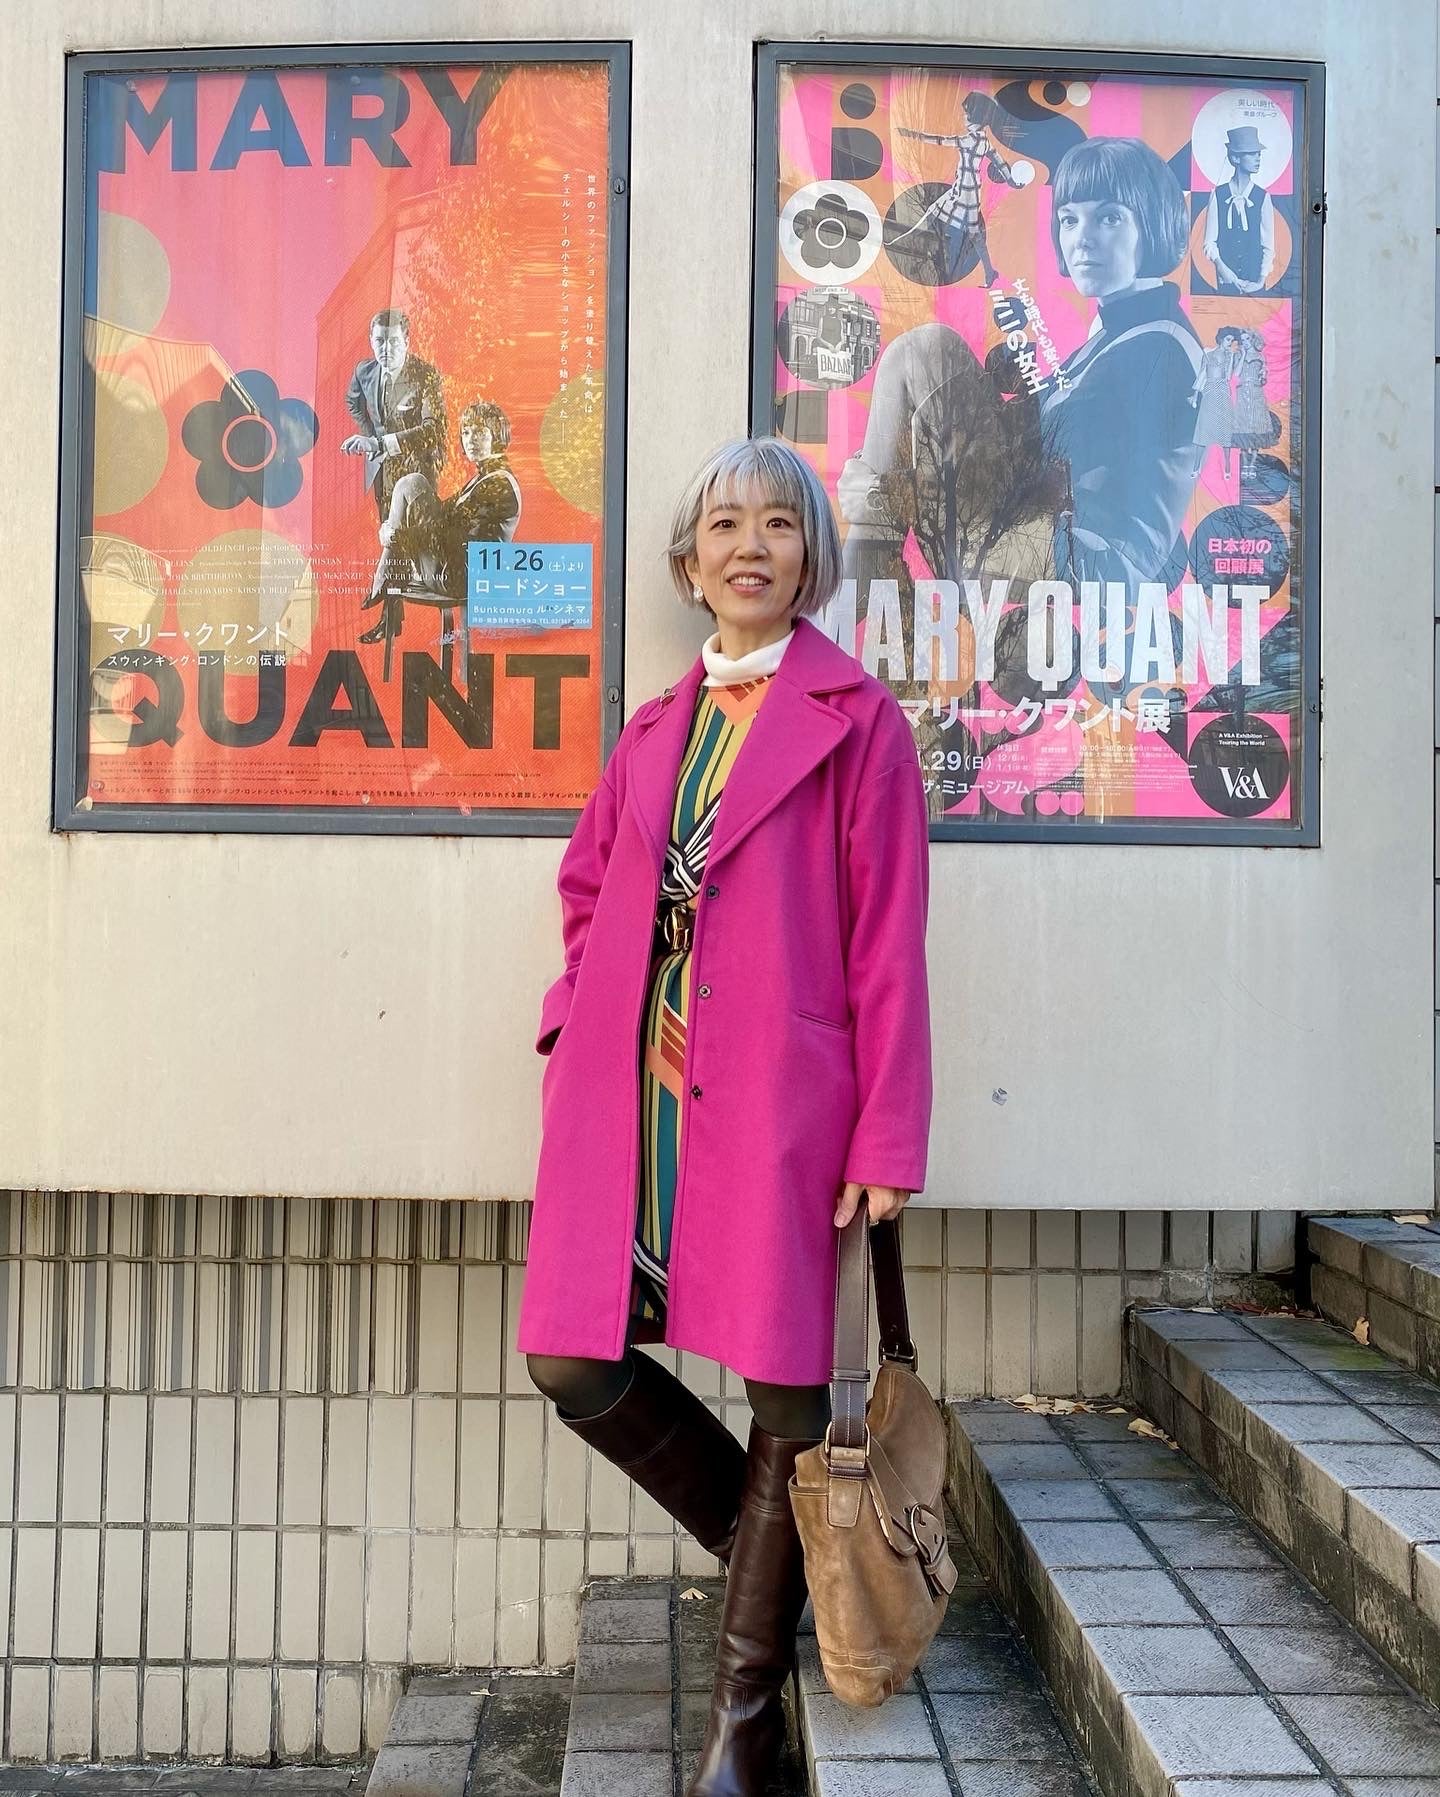 手持ち服で60年代風⁈ マリー・クワント展の装い | 朝倉真弓